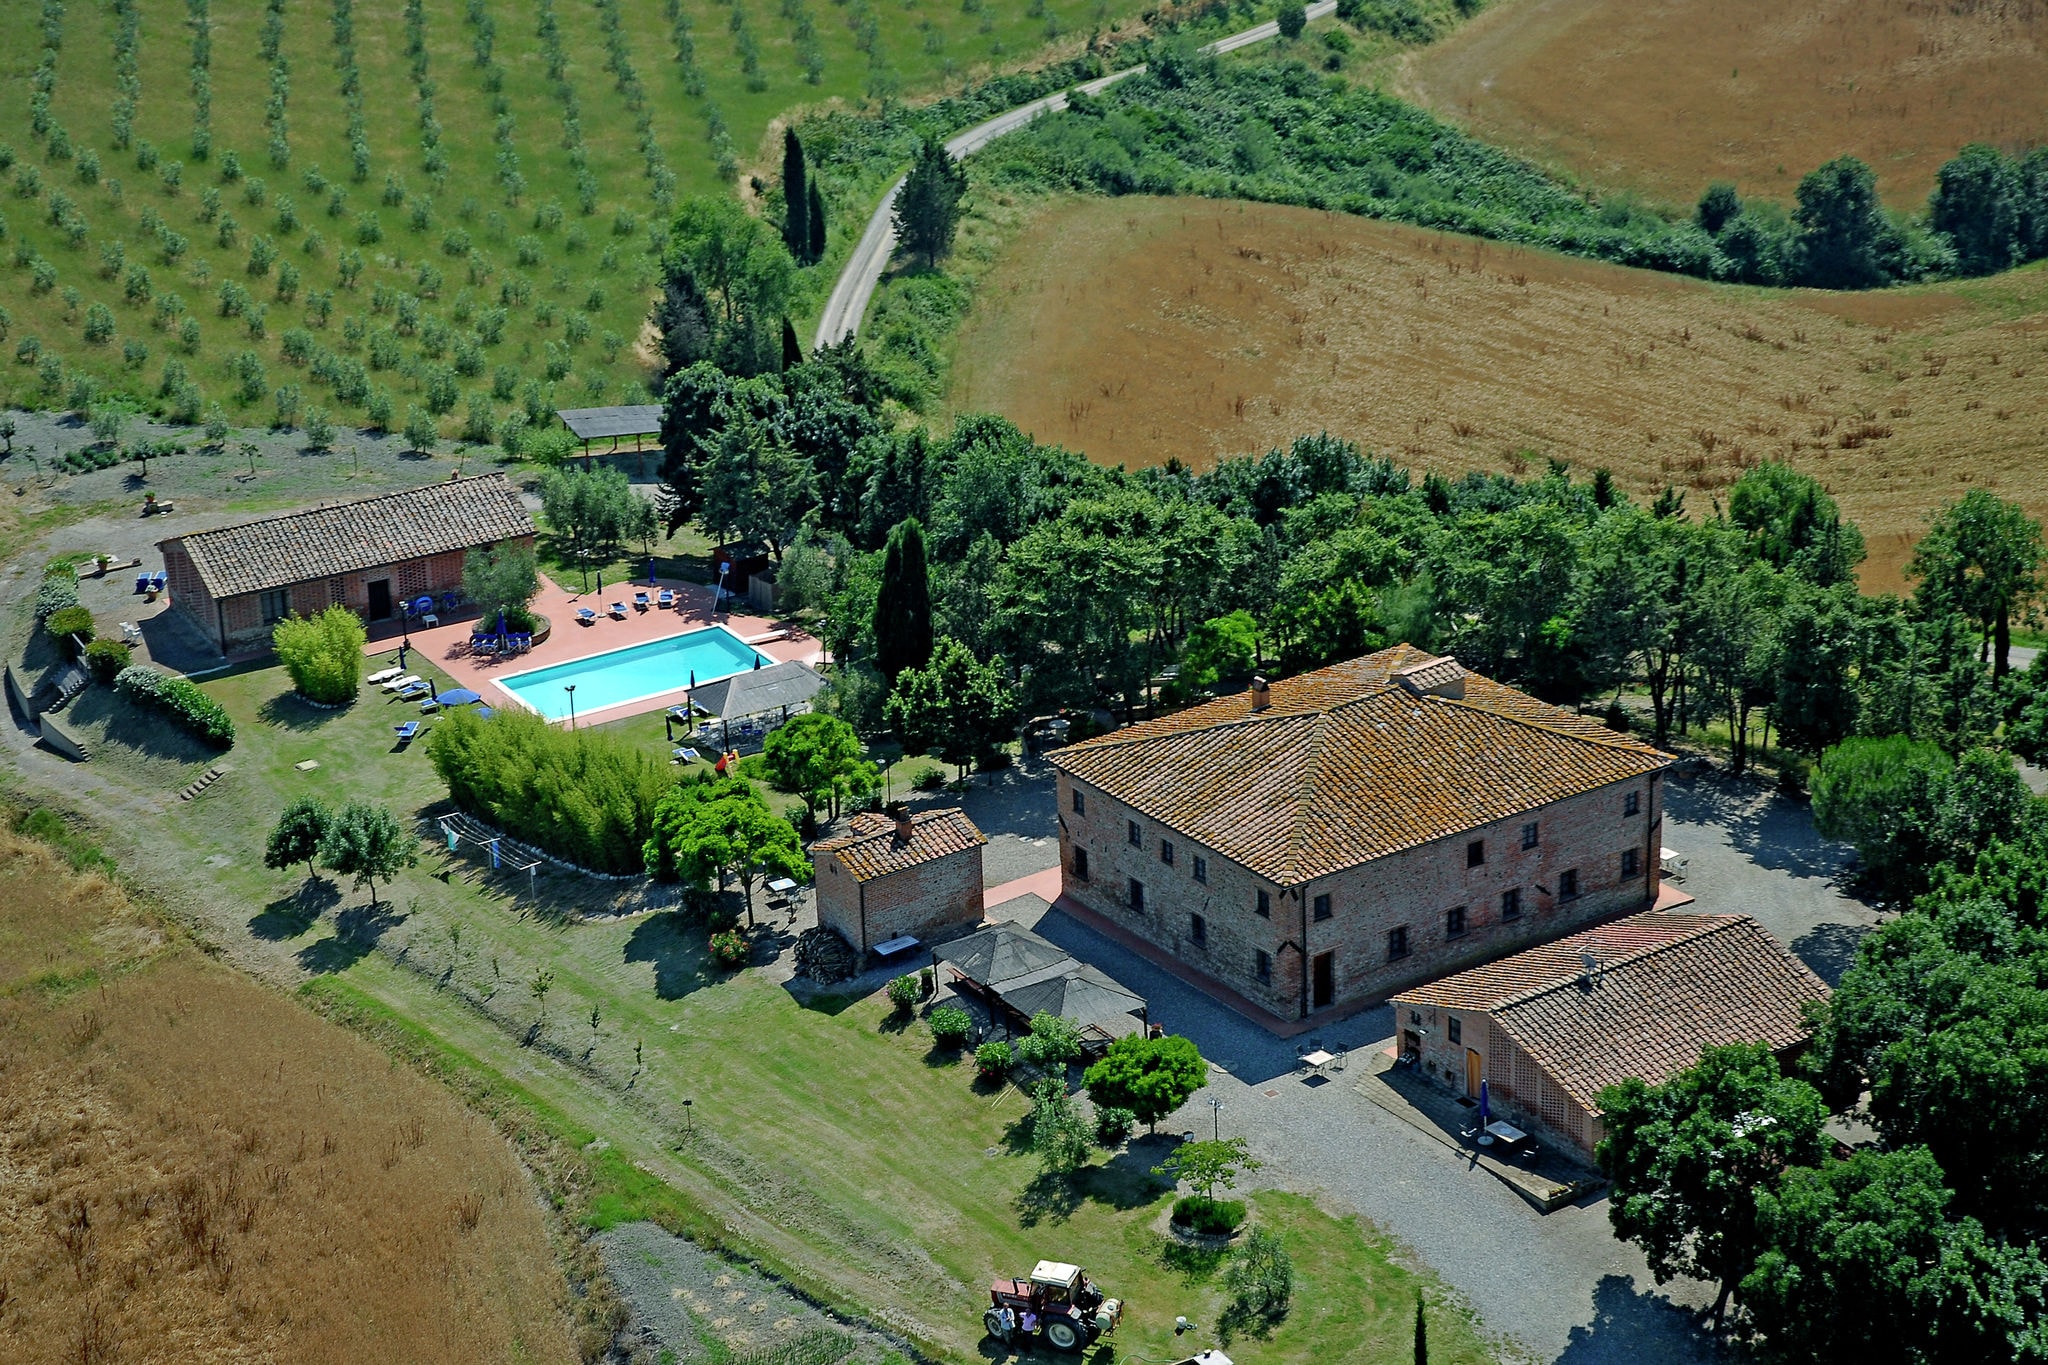 Appartement in een boerderij, met zwembad, in het hart van Toscane